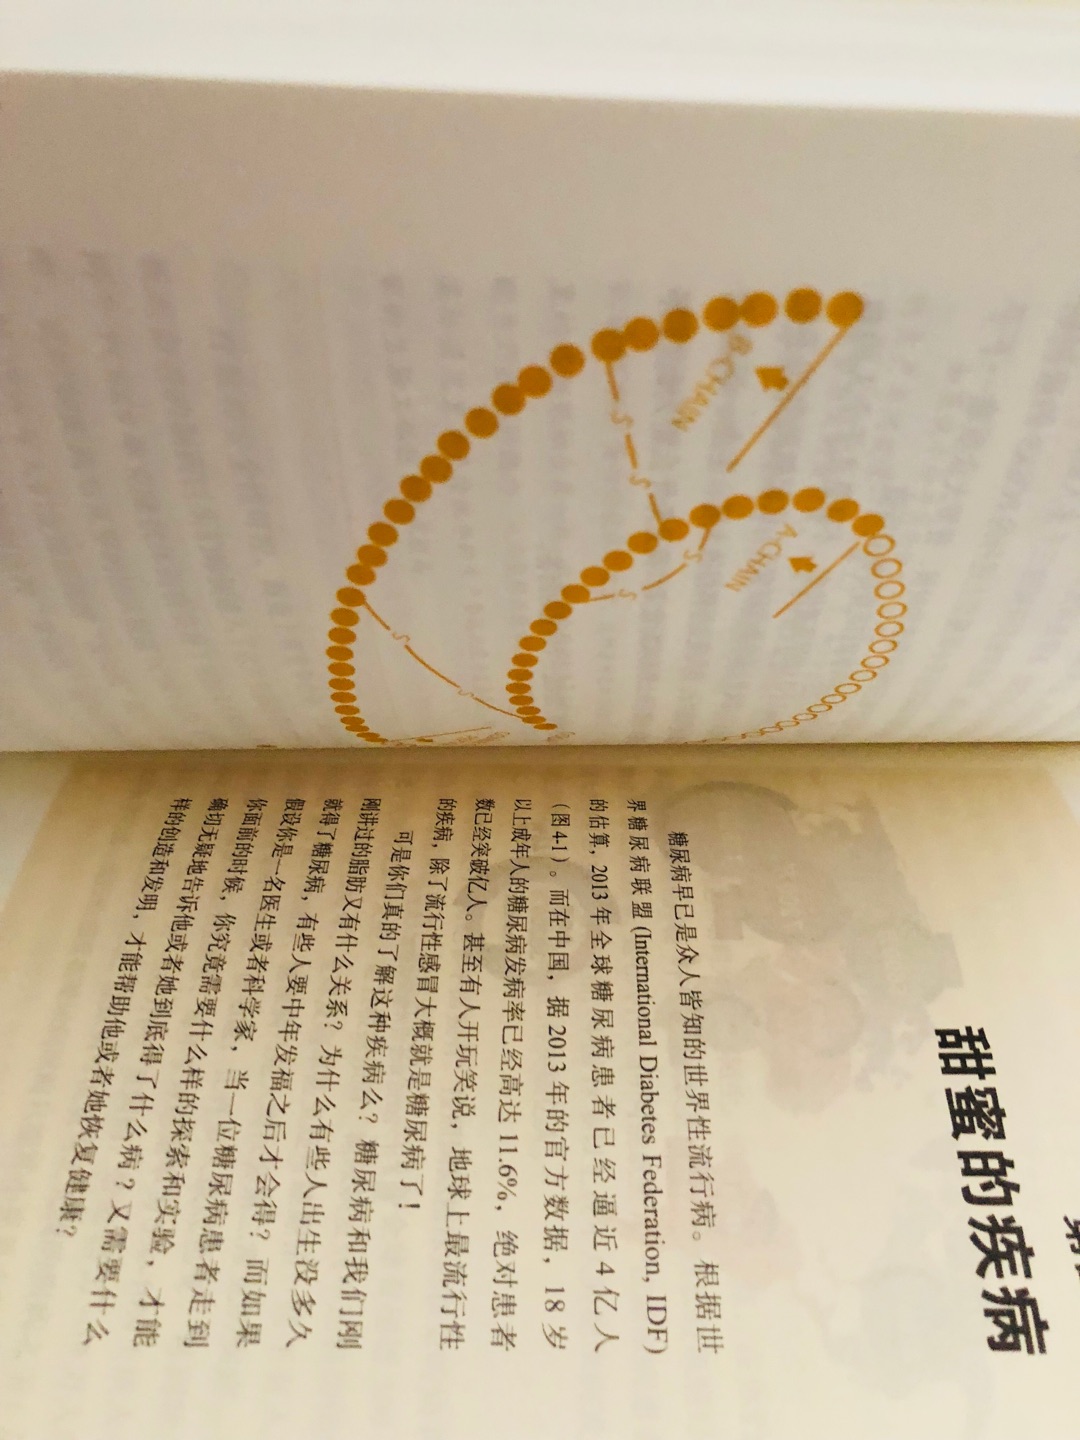 北京崽高二六选三选了生物 生物老师推荐了这本书说是对以后生物学习有帮助的课外书 准备开始看啦 高二加油！